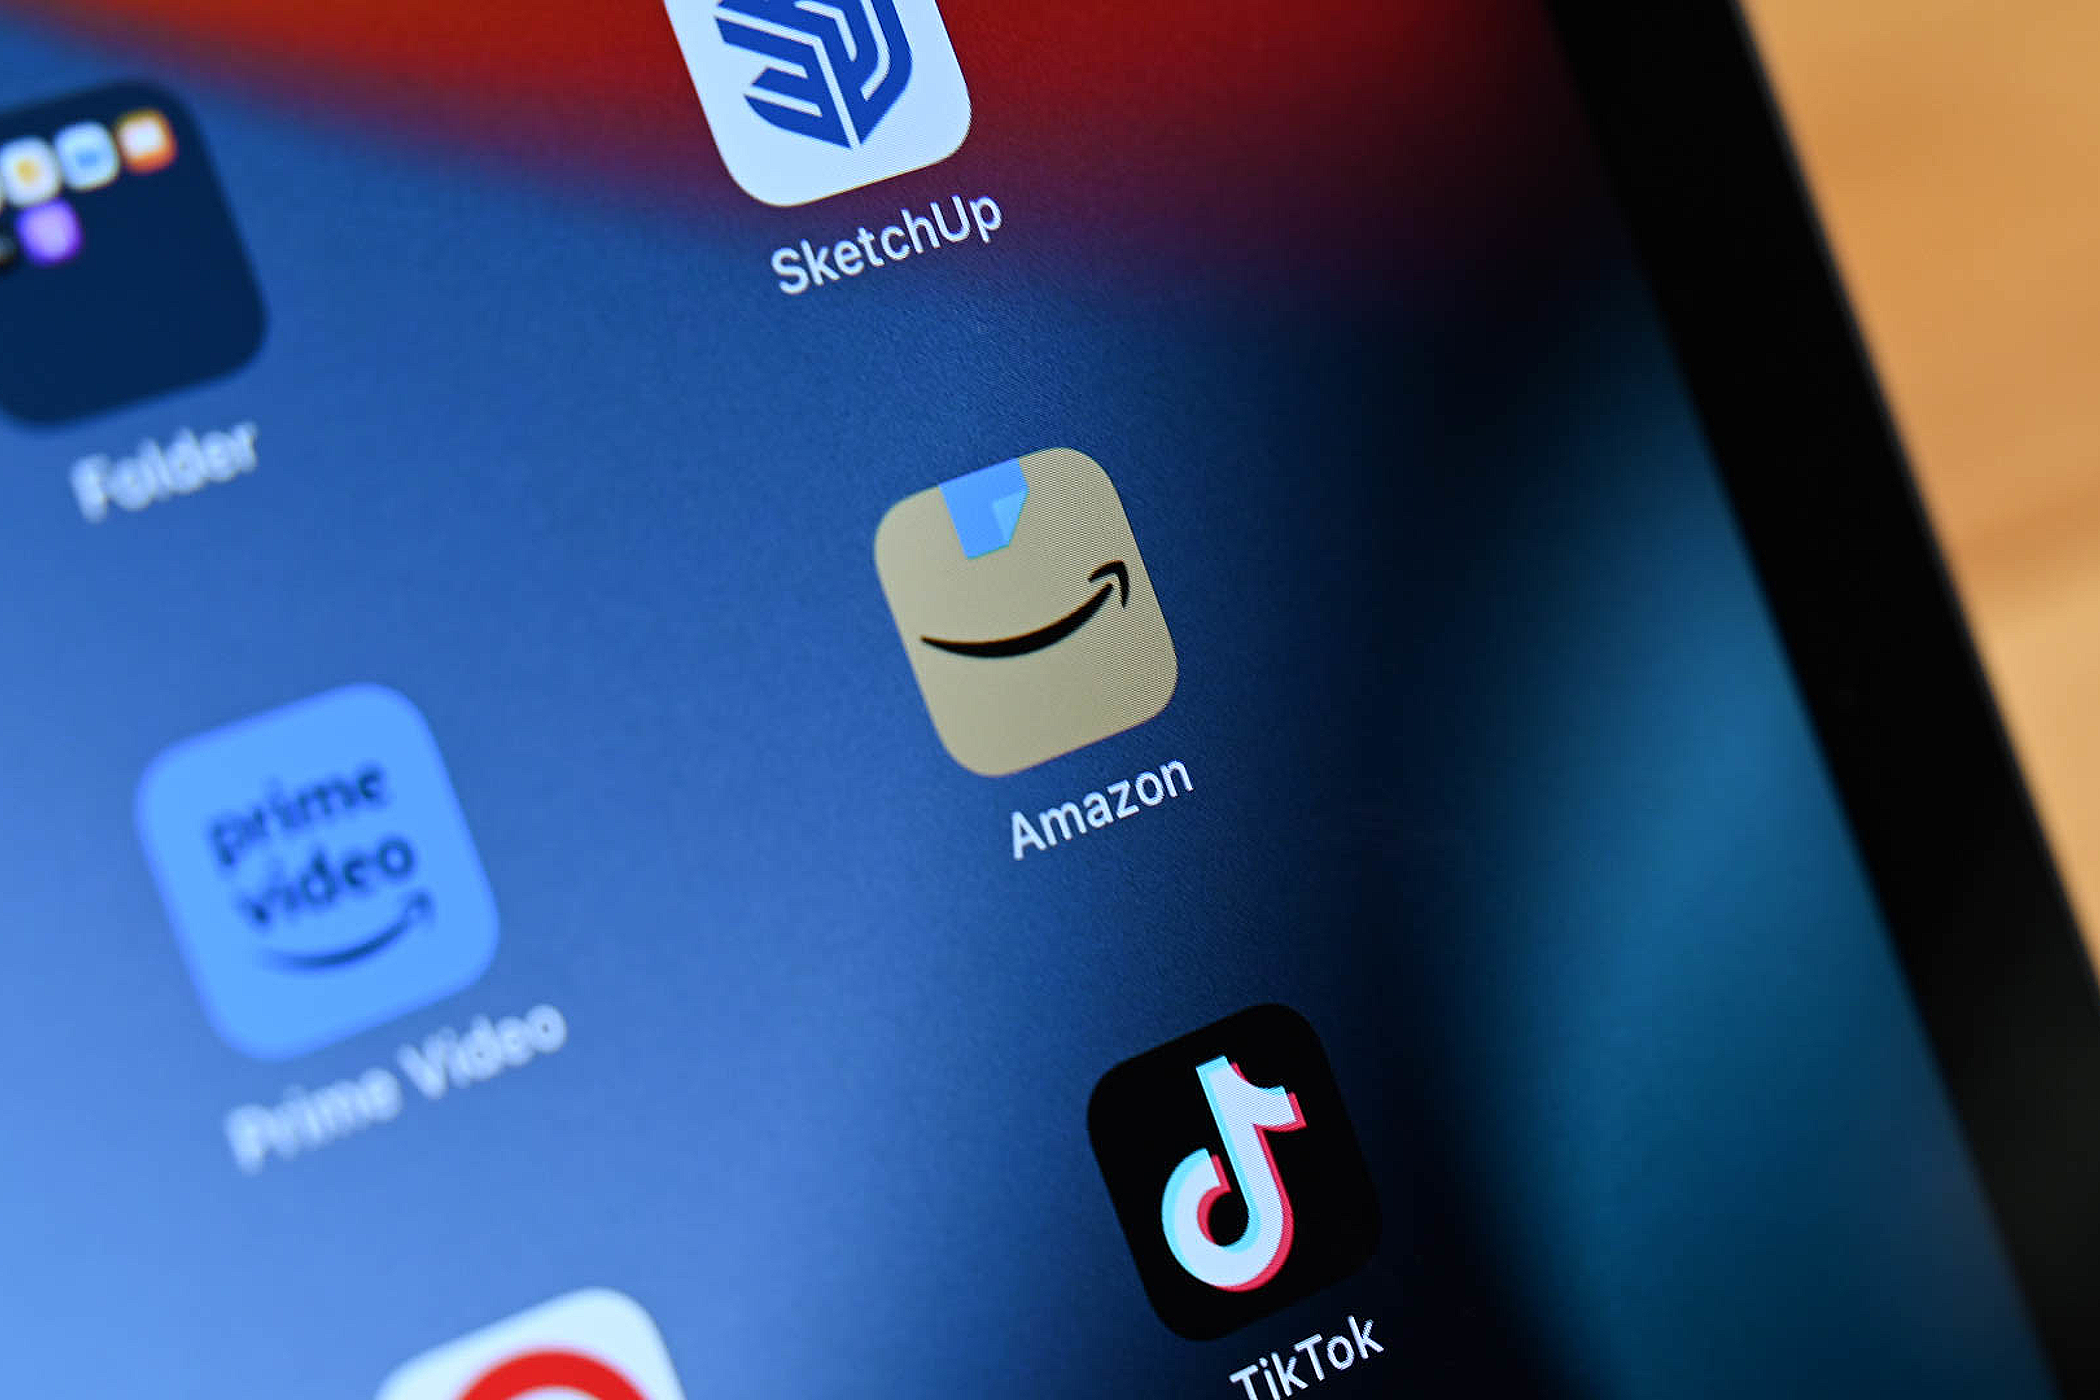 Amazon app on iPad